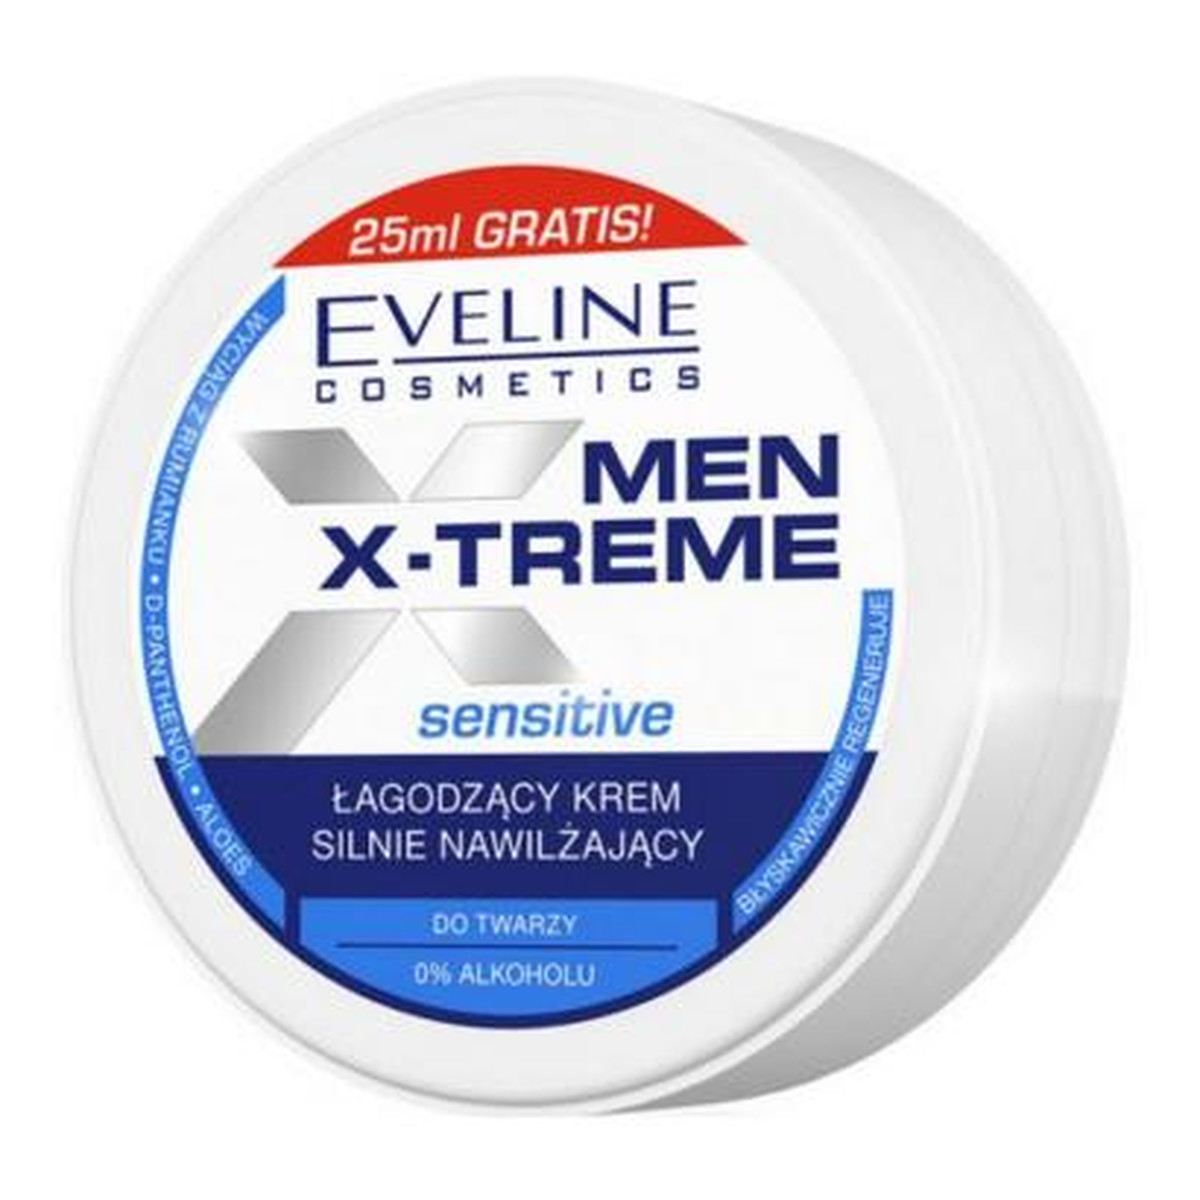 Eveline Men X-Treme Sensitive łagodzący krem silnie nawilżający do twarzy 100ml